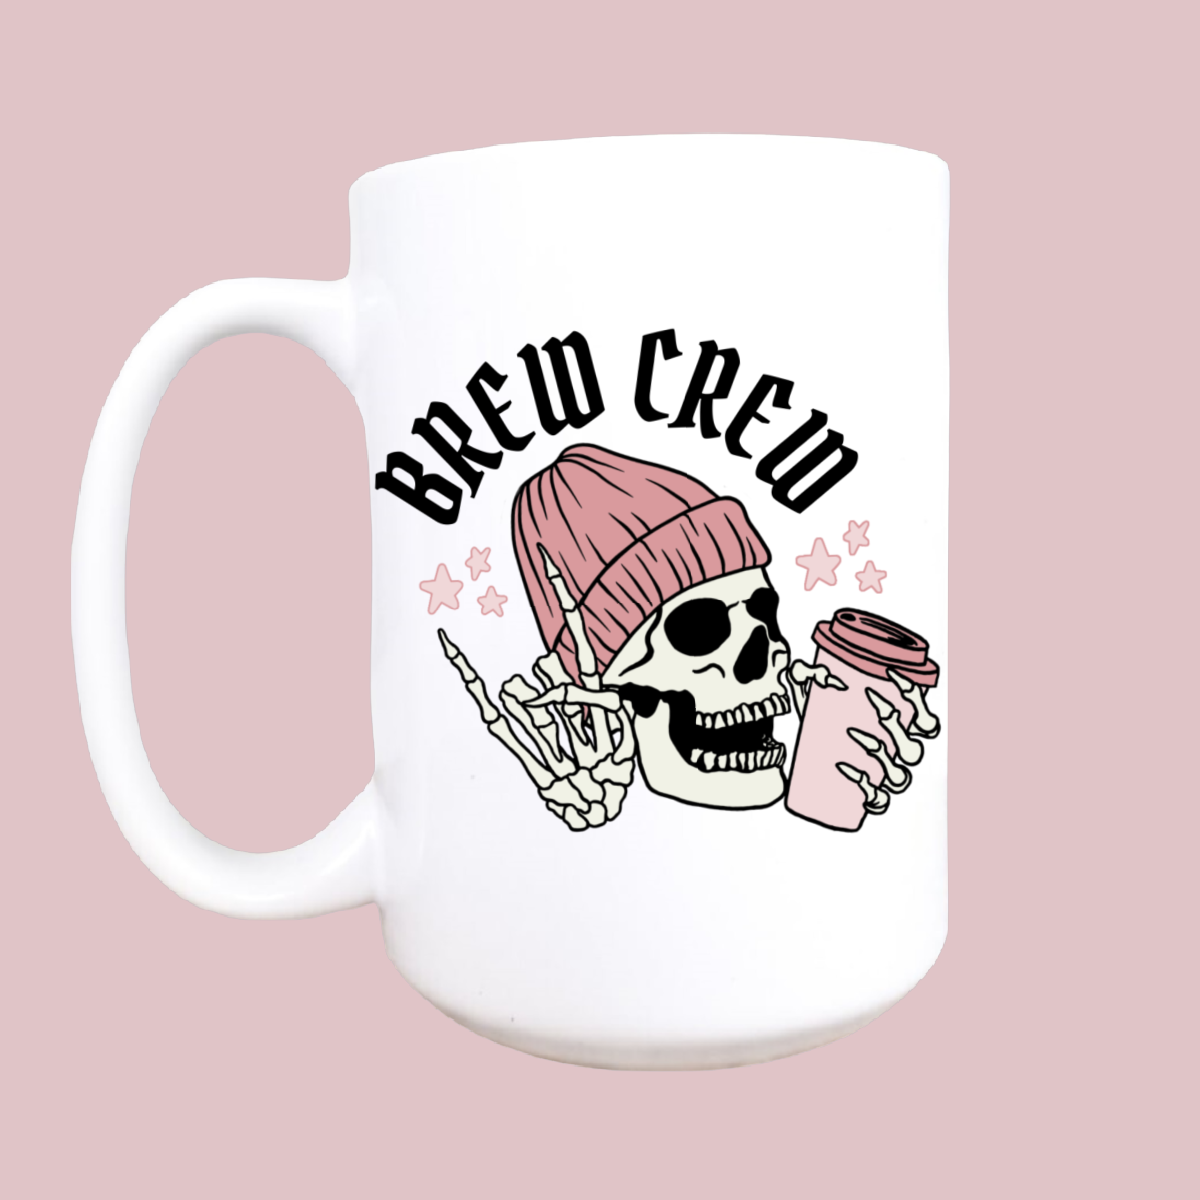 Brew crew Halloween mug, Halloween, spooky mug, coffee mug